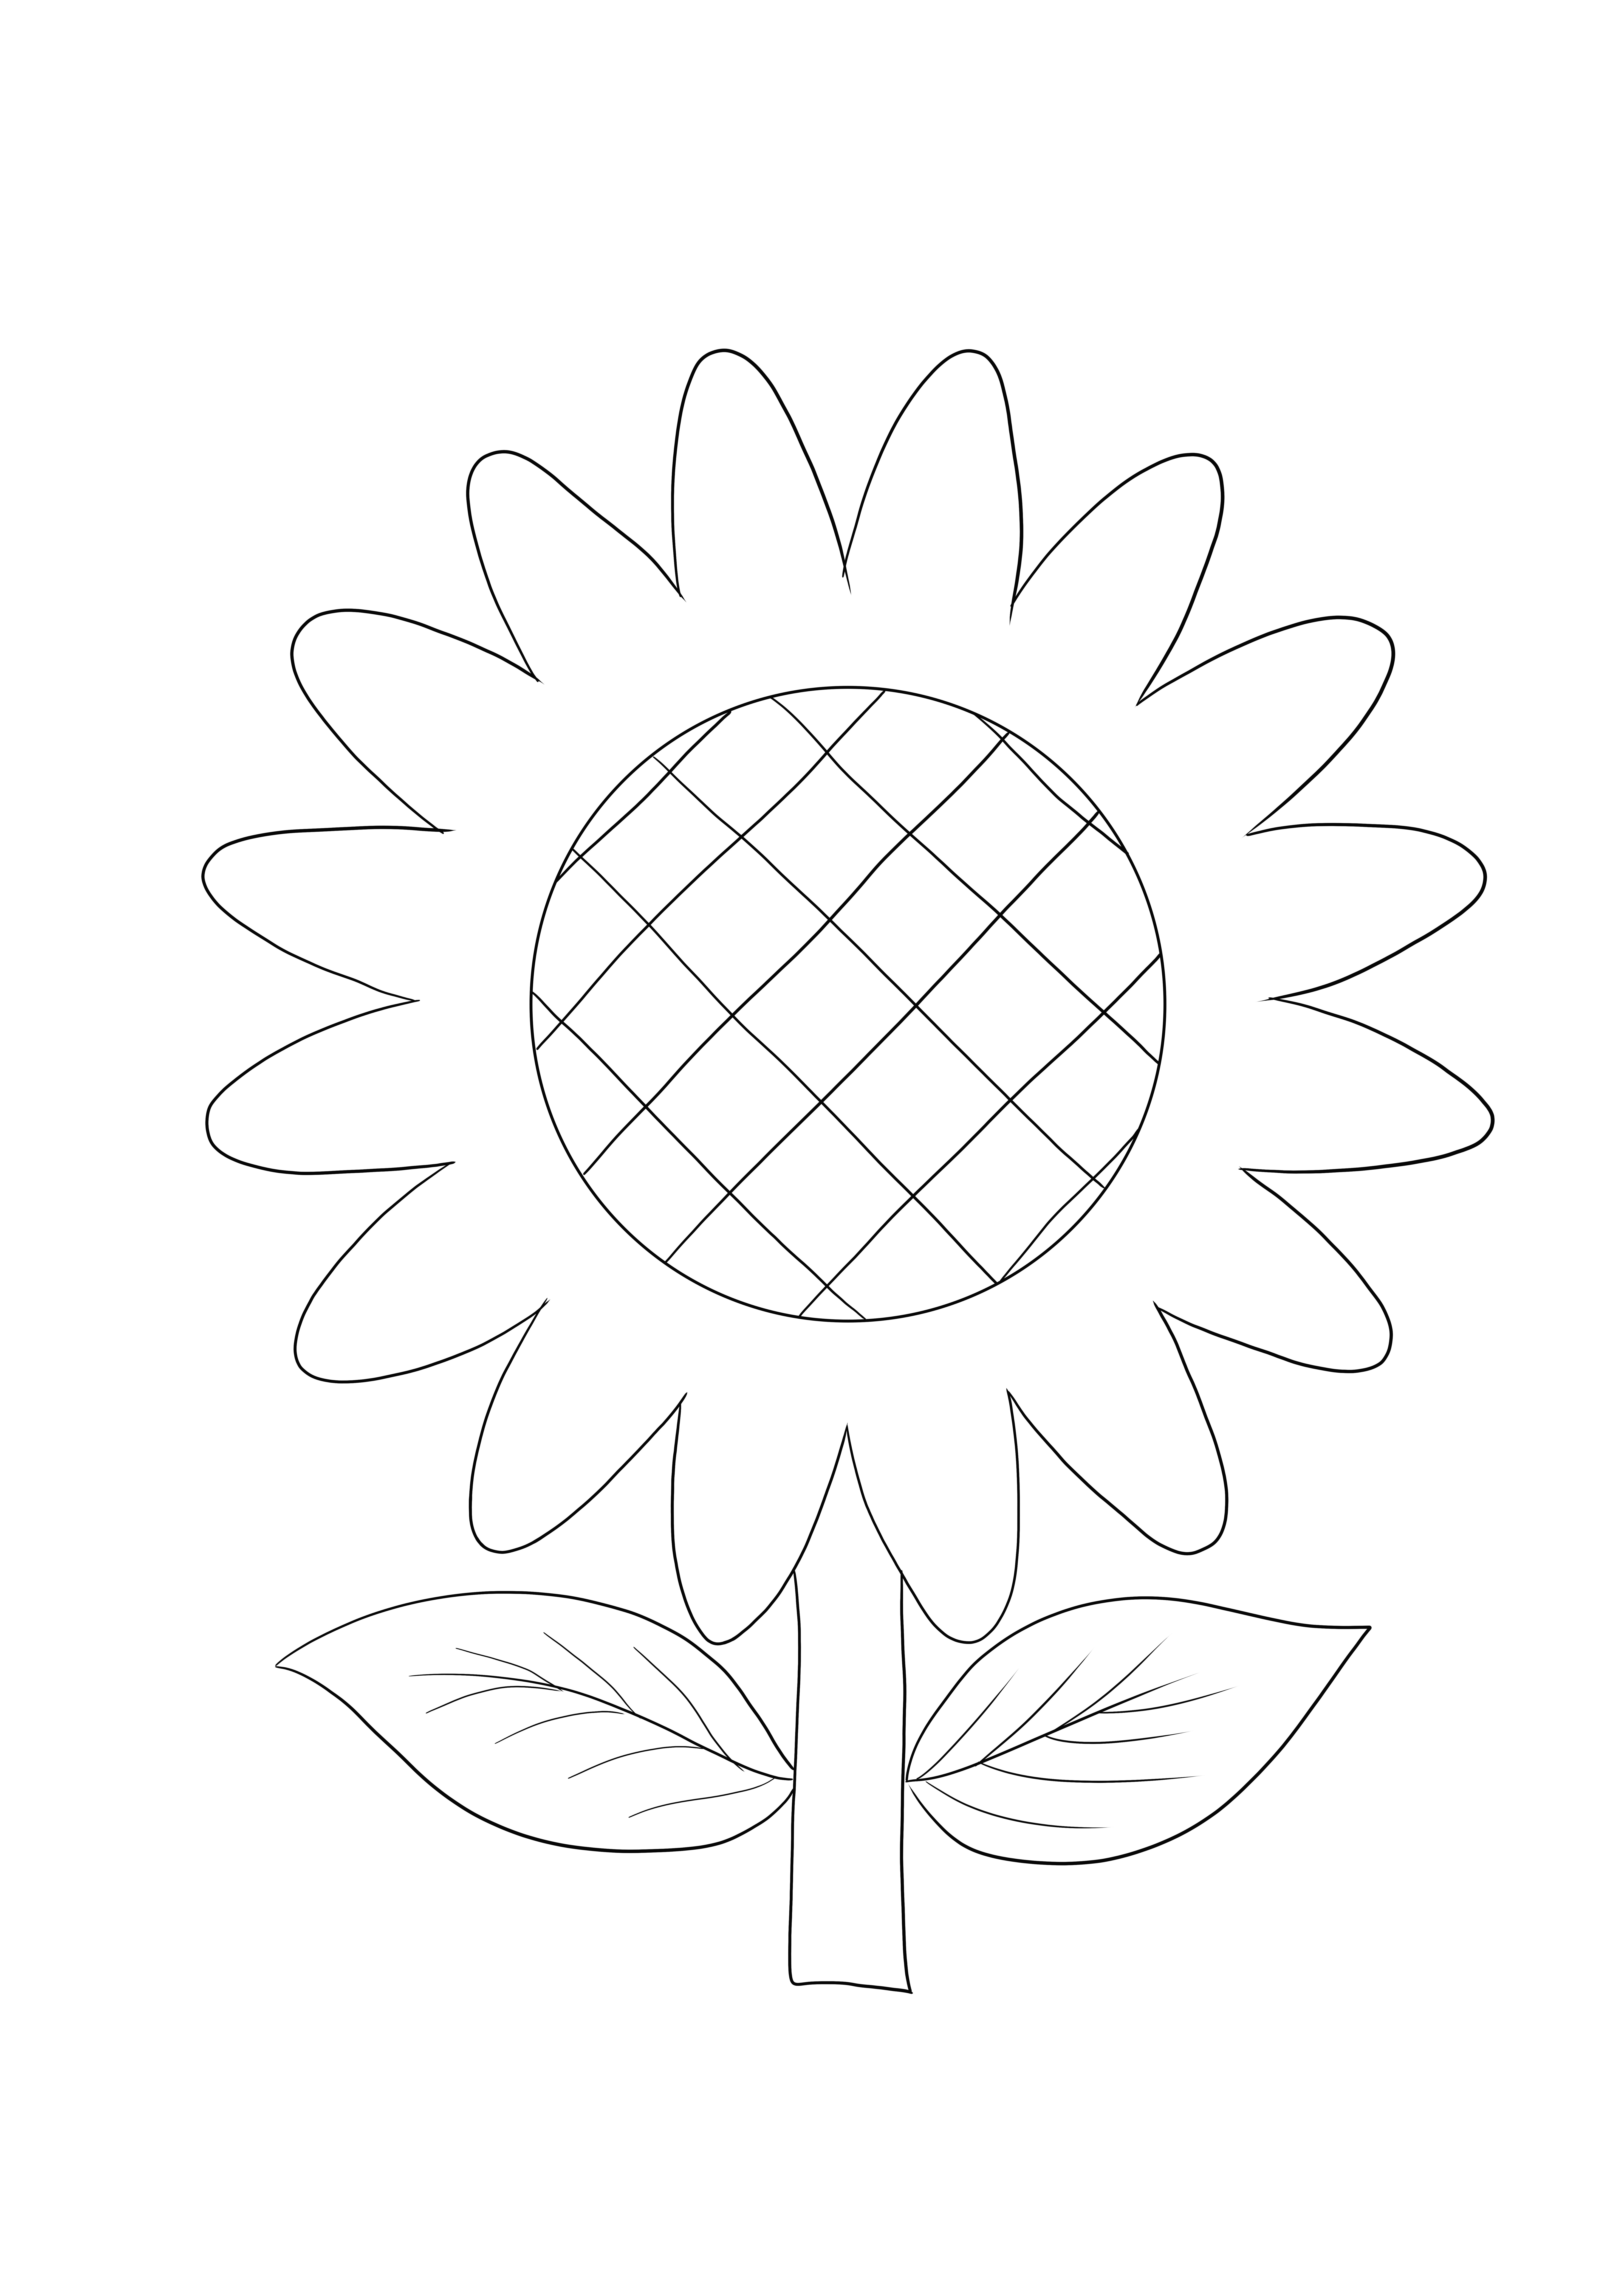 Sunflower Emoji untuk mencetak secara gratis untuk anak-anak dari segala usia